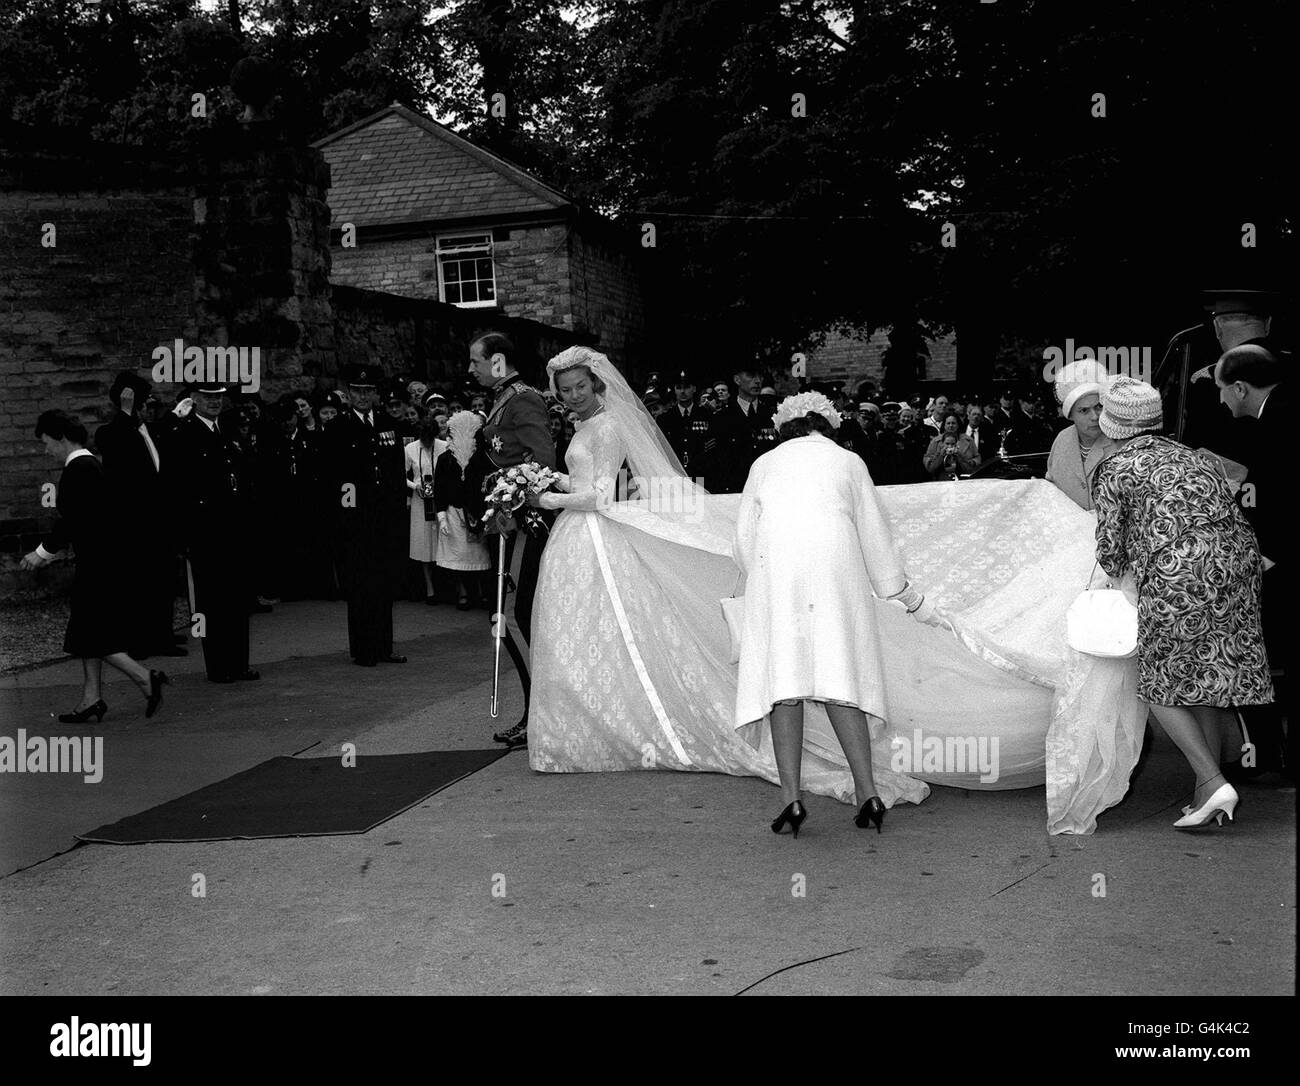 La duquesa de Kent (Katharine Worsley) con su novio, el duque de Kent, mientras que su tren se ajusta a su llegada a Hovingham Hall, después de su ceremonia de boda en York Minster. Foto de stock